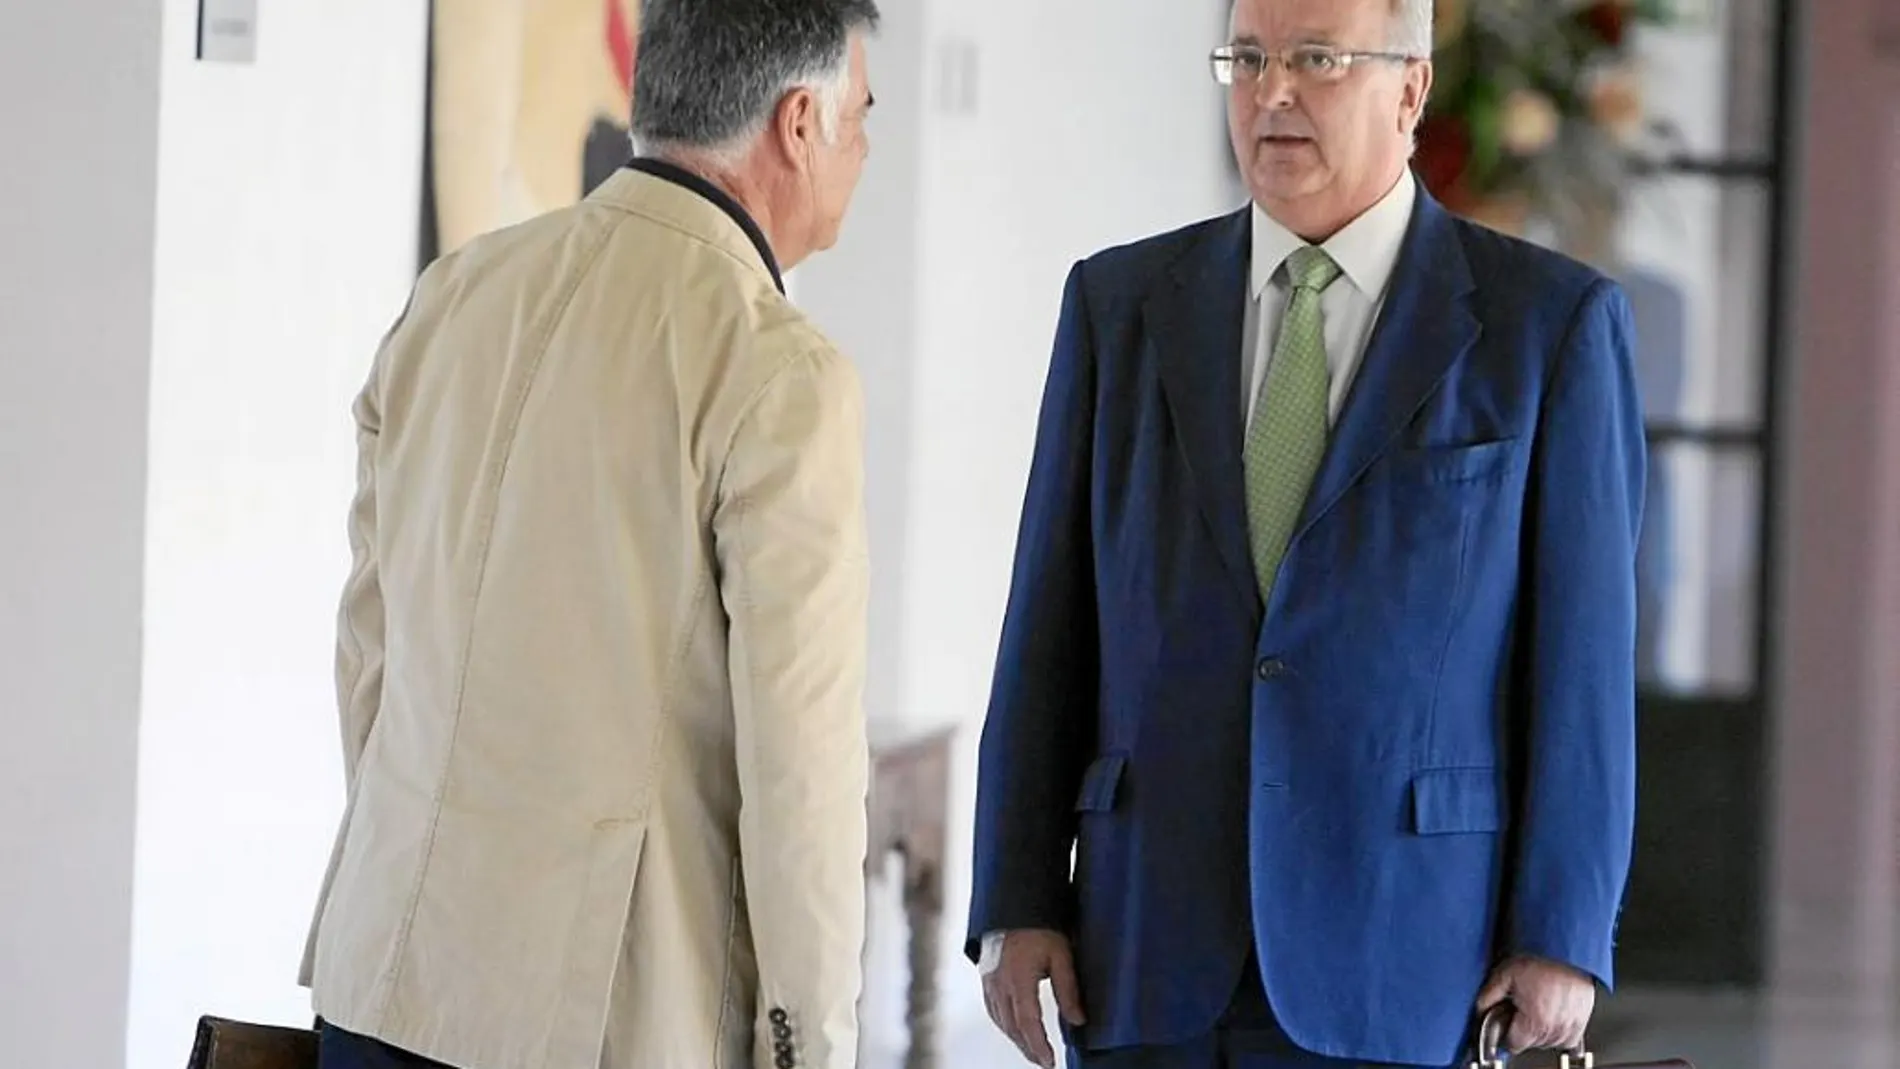 José Antonio Viera y Antonio Fernández se encontraron ayer en los pasillos del Parlamento de Andalucía